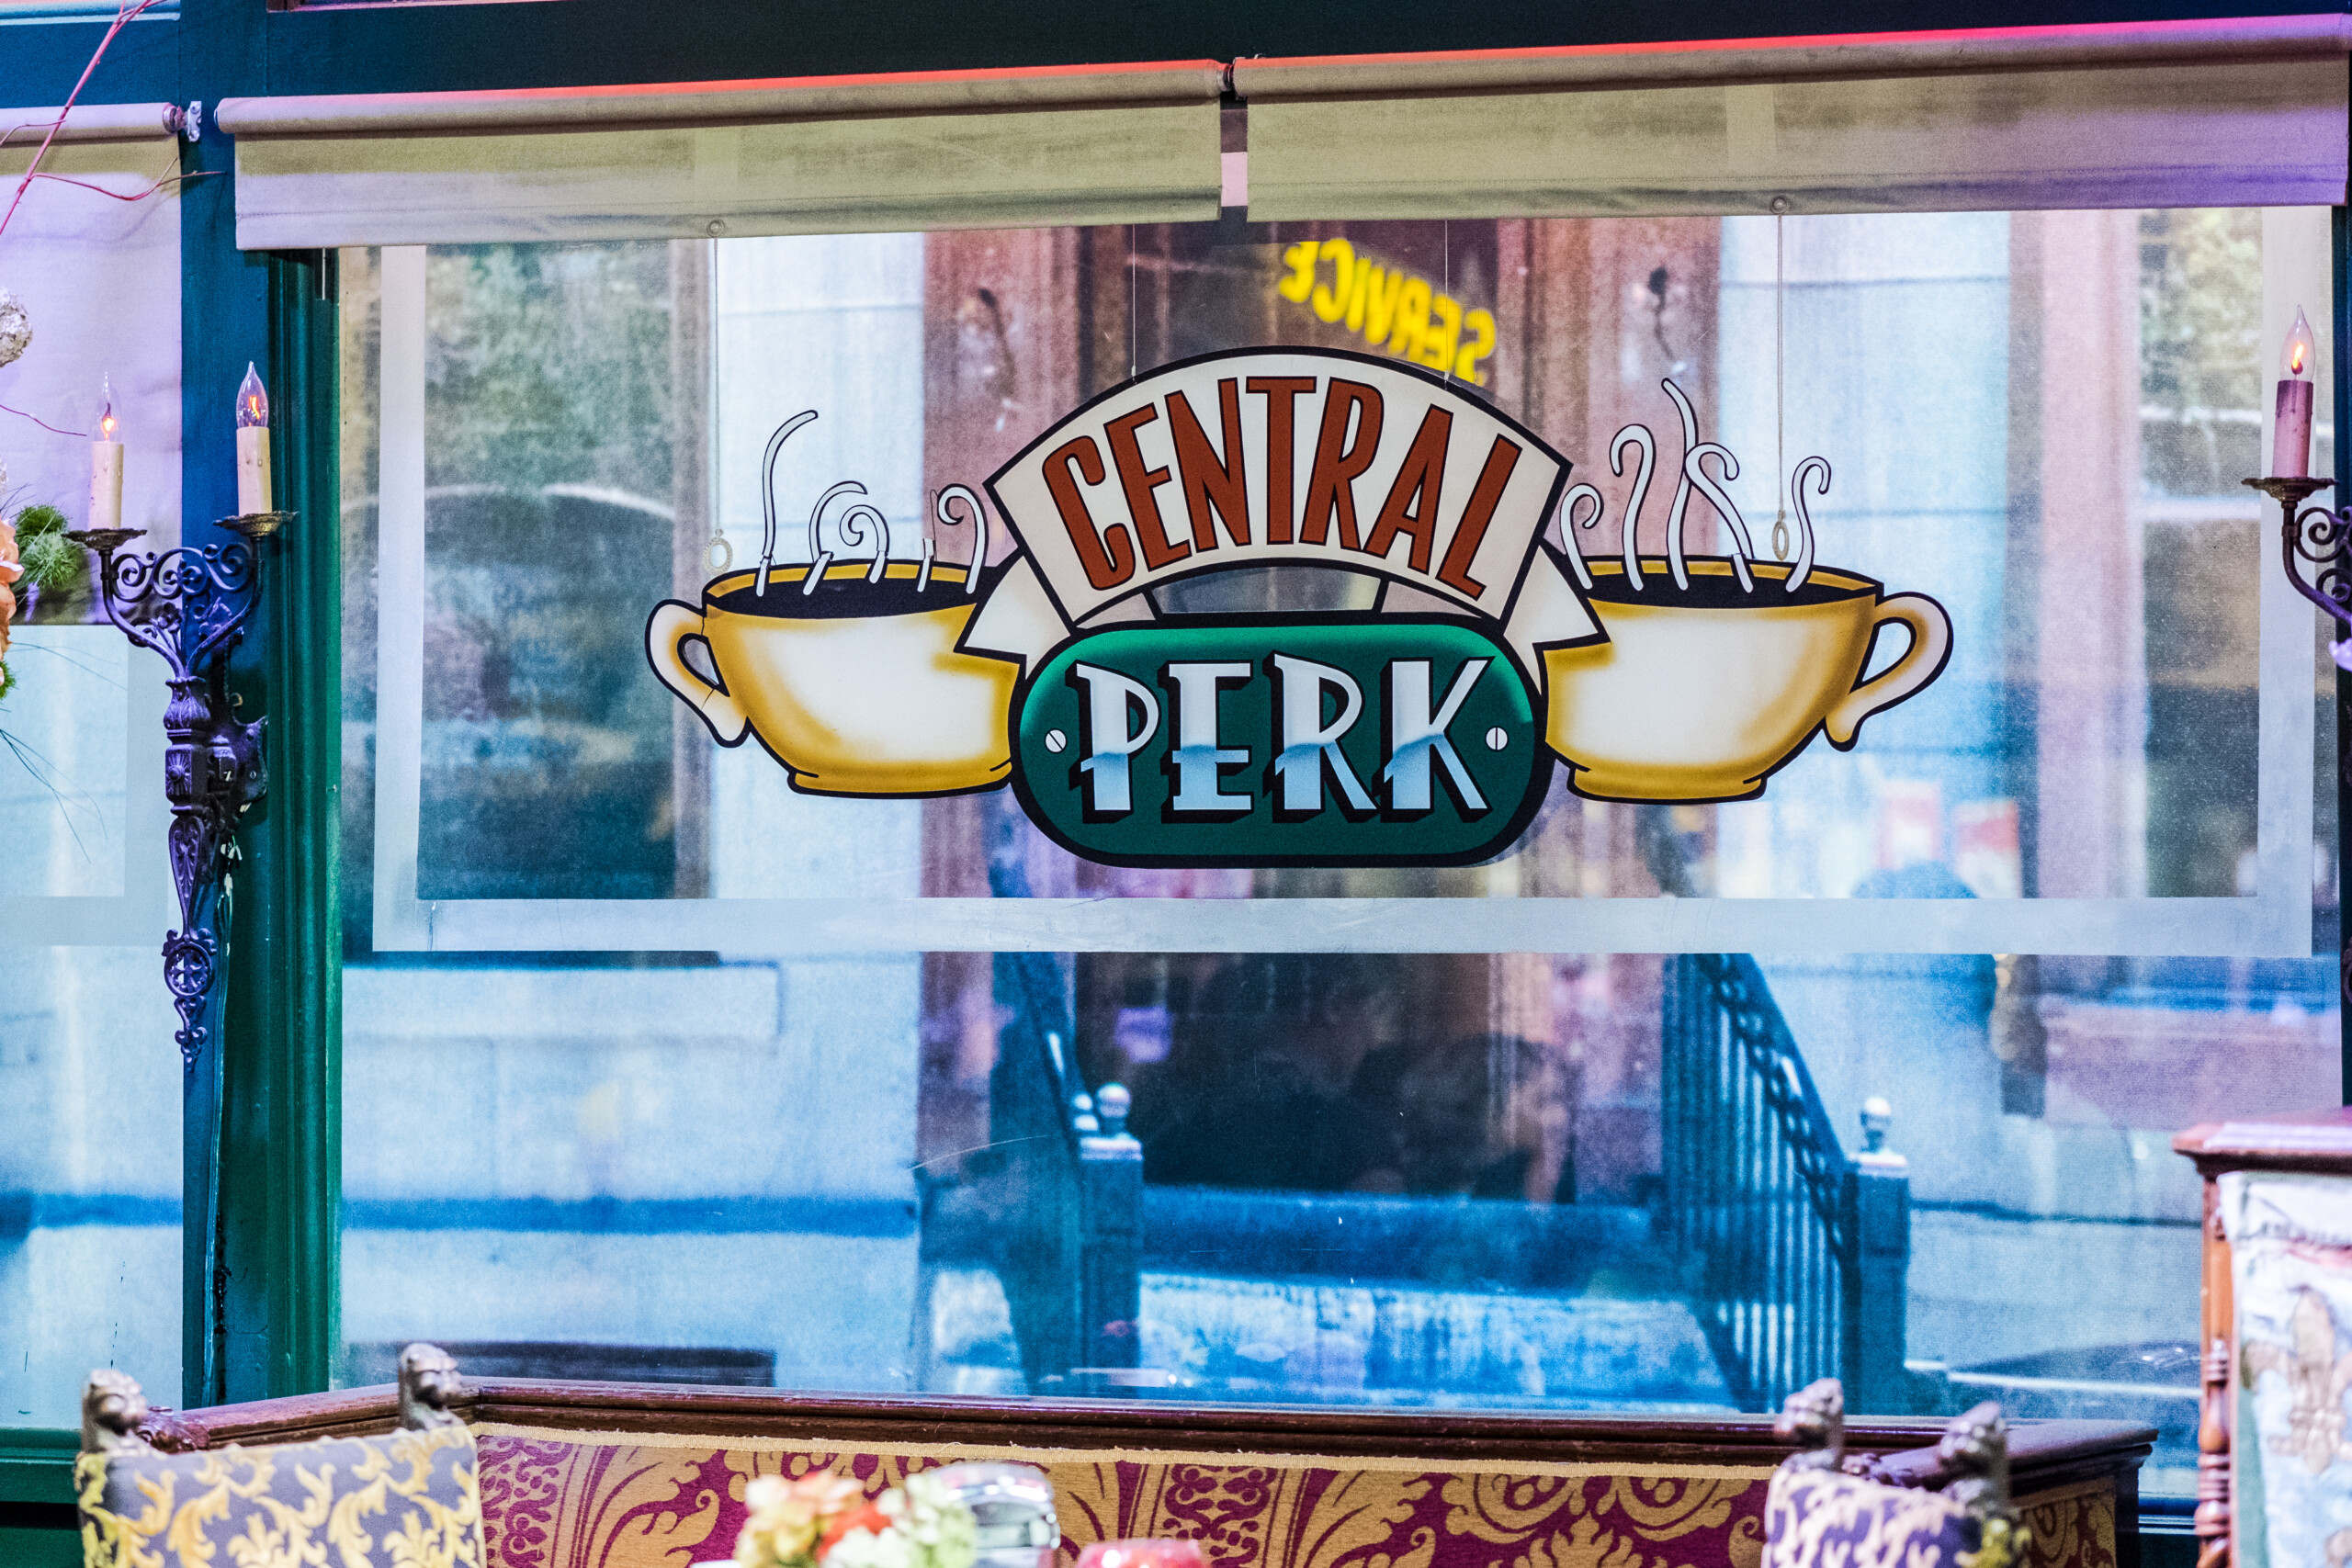 Burbank / USA - lipiec 2017 Kawiarnia "Central Perk" w studiach Warner Bros, licencja: shutterstock/Autor: Krzysztof Stefaniak